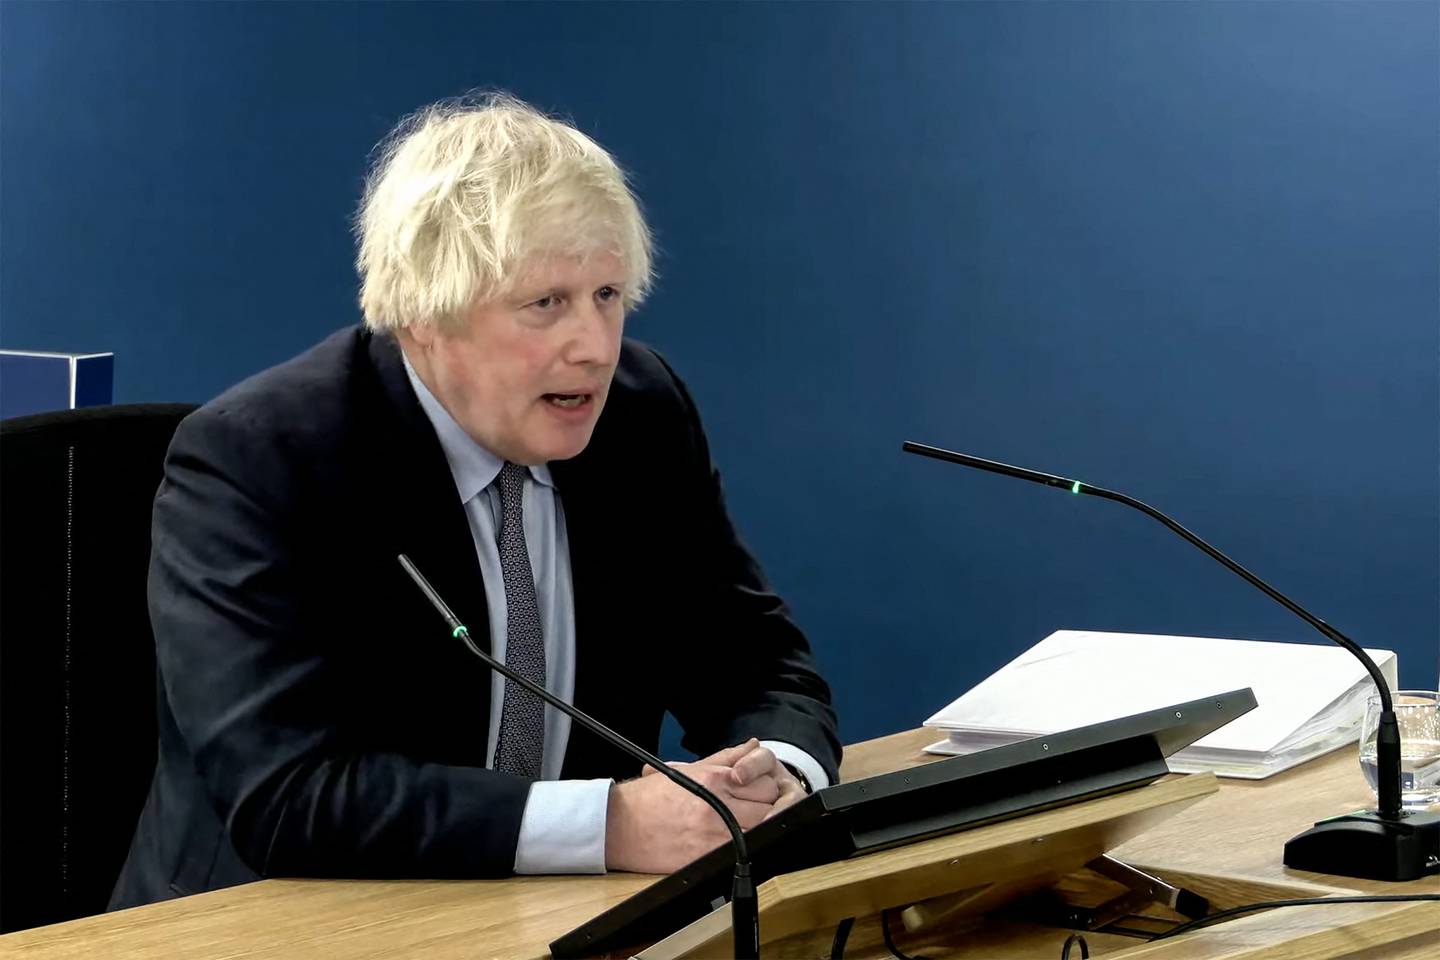 Un vídeo extraído de imágenes transmitidas por la Investigación Covid-19 del Reino Unido muestra al ex primer ministro británico Boris Johnson hablando en la Investigación Covid-19 del Reino Unido, en el oeste de Londres para declarar.